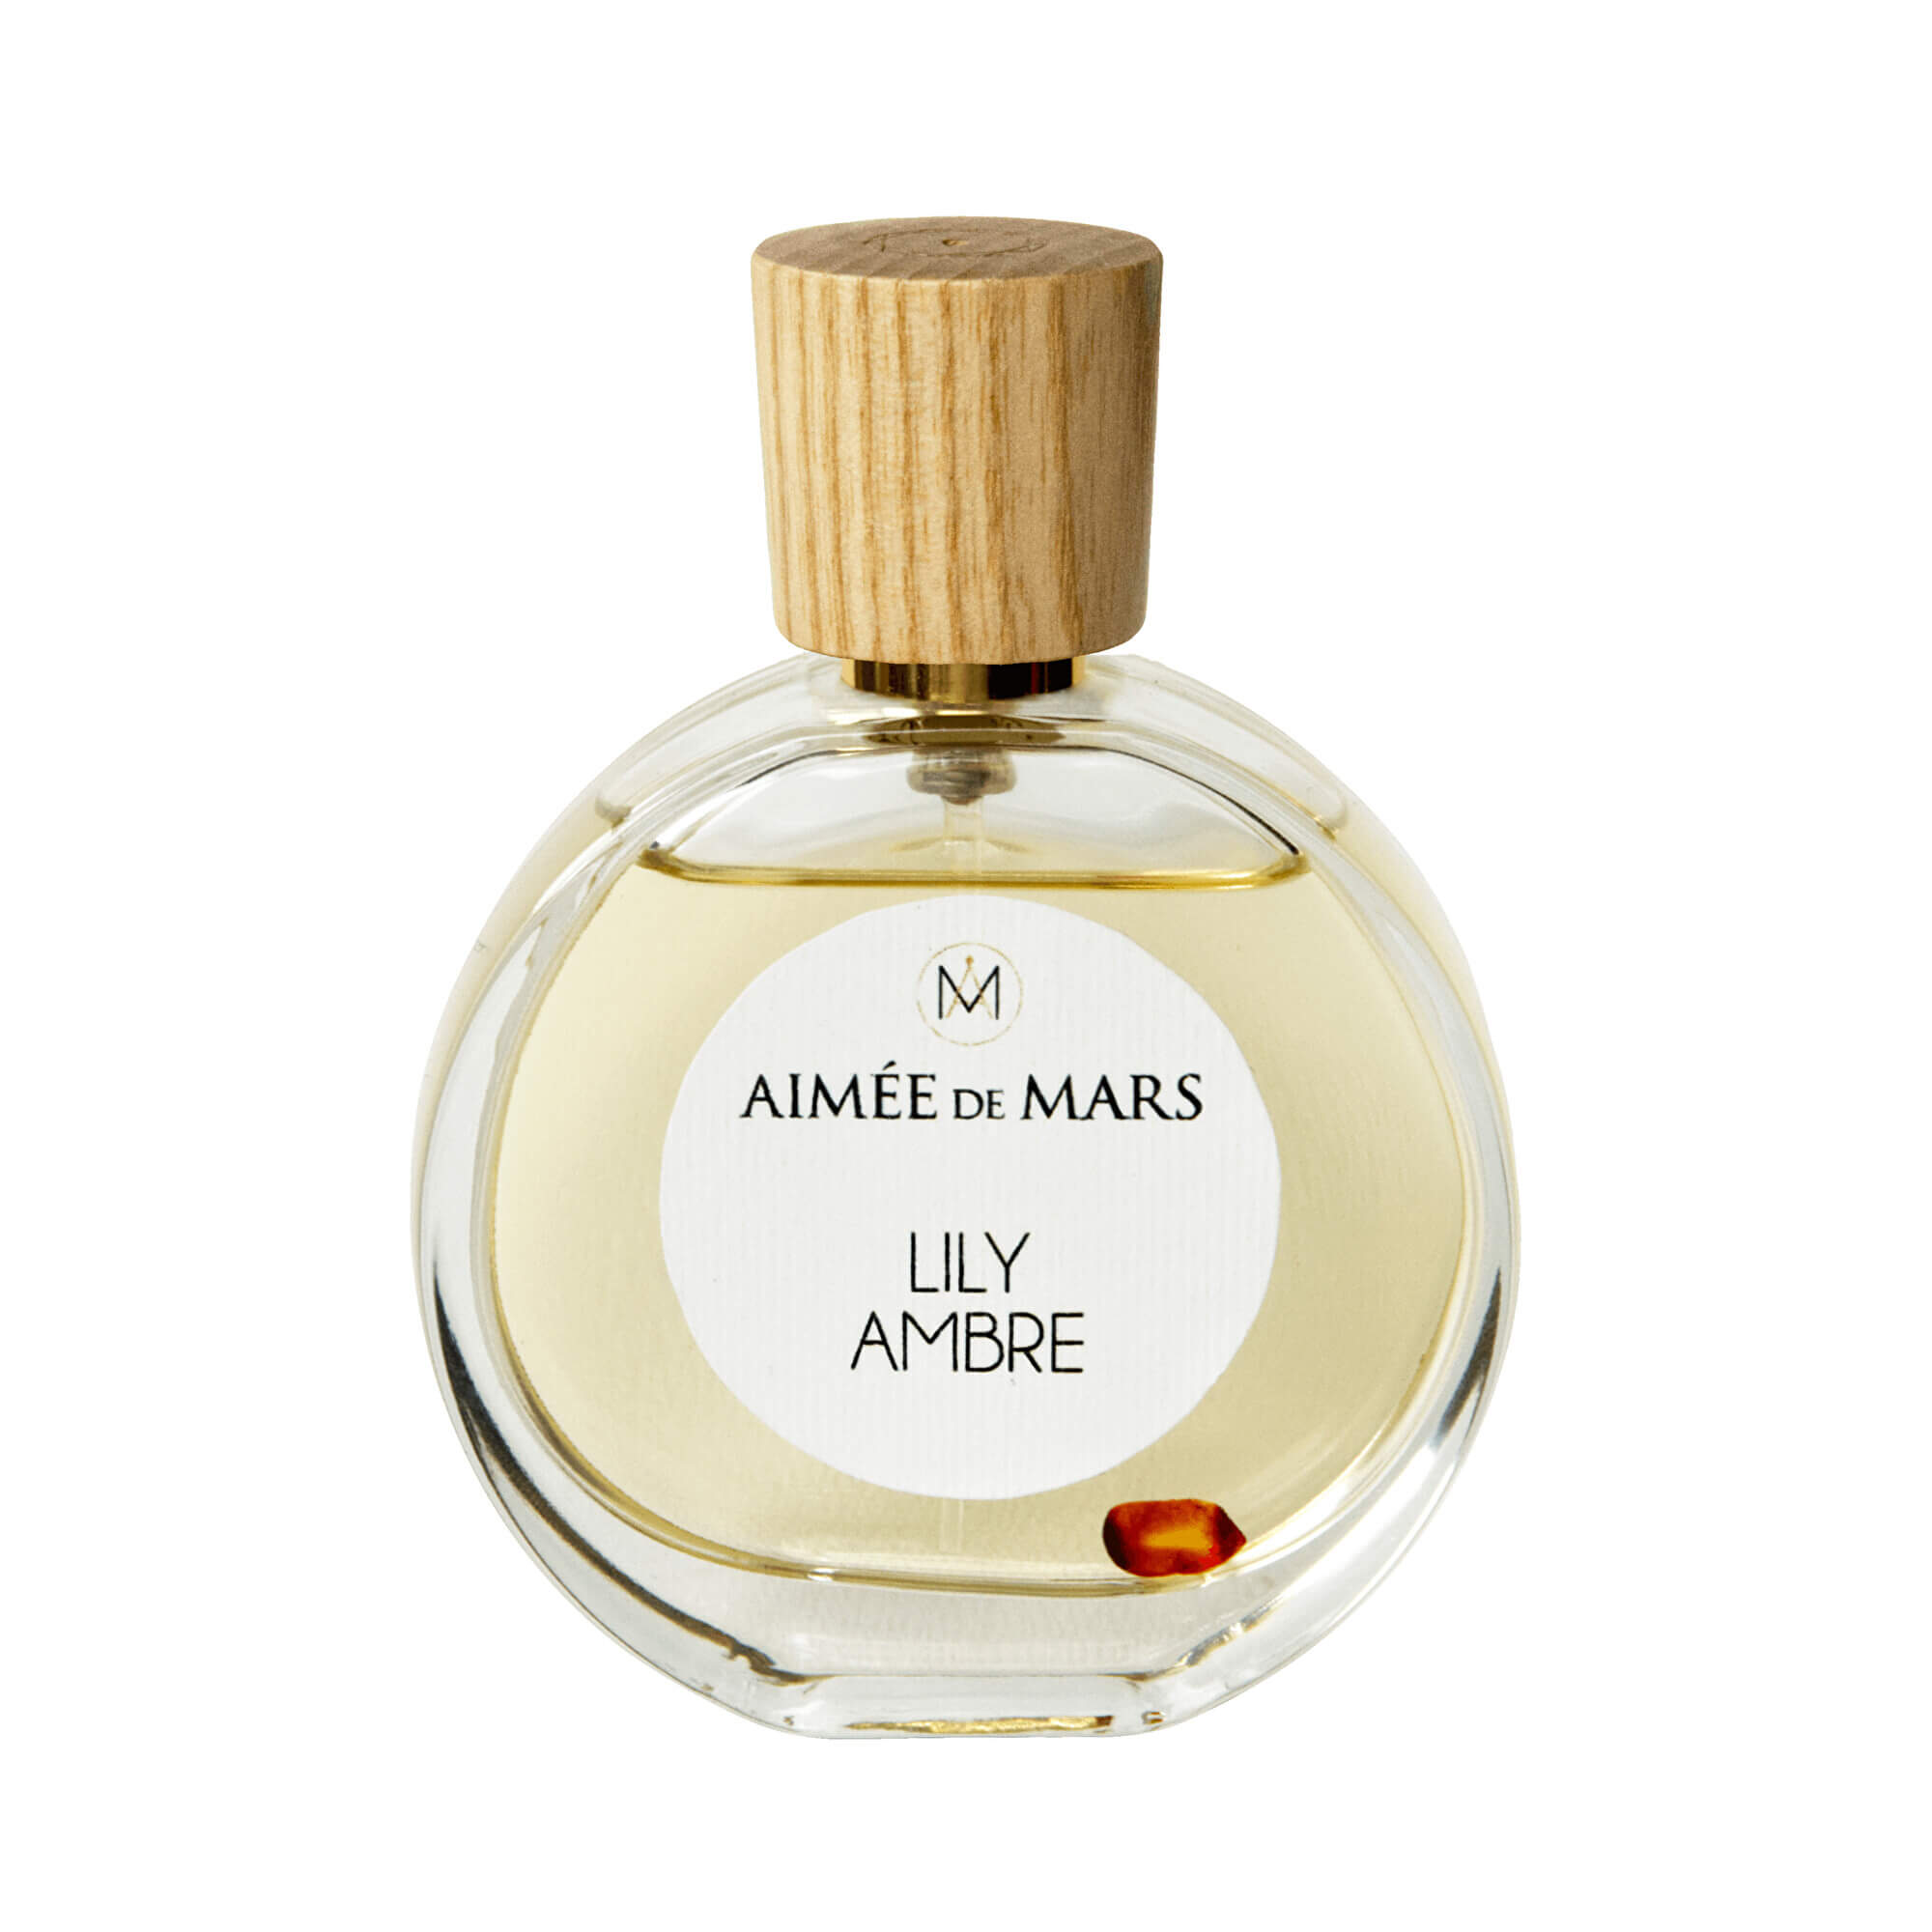 Maison de Mars Parfumová voda Aimée de Mars Lily Ambre - Elixir de Parfum 50 ml + 2 mesiace na vrátenie tovaru